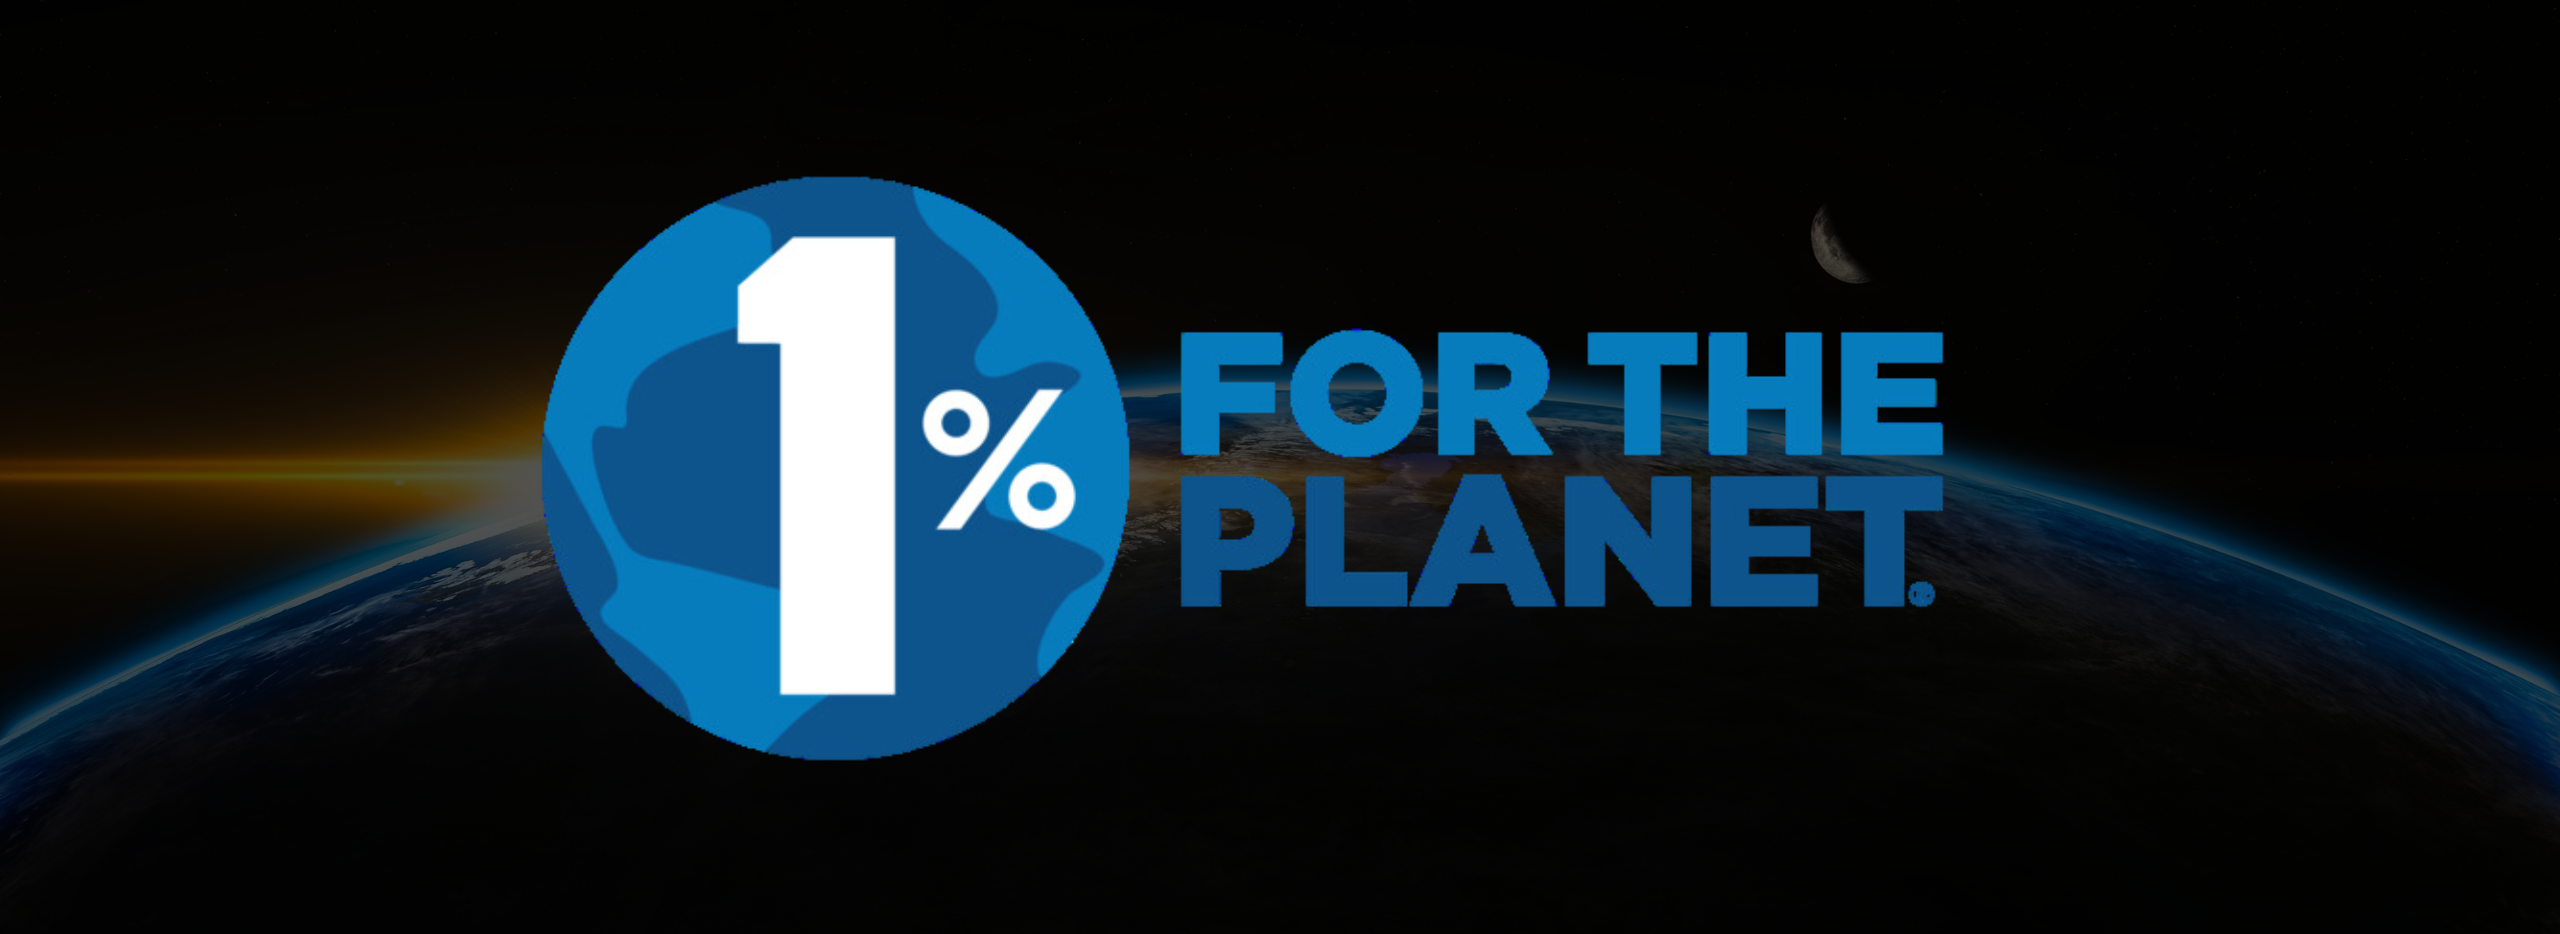 1% For The Planet est une organisation à but non lucratif crée en 2002 aux Etats-Unis par Yvon Chouinard et Craig Mathews